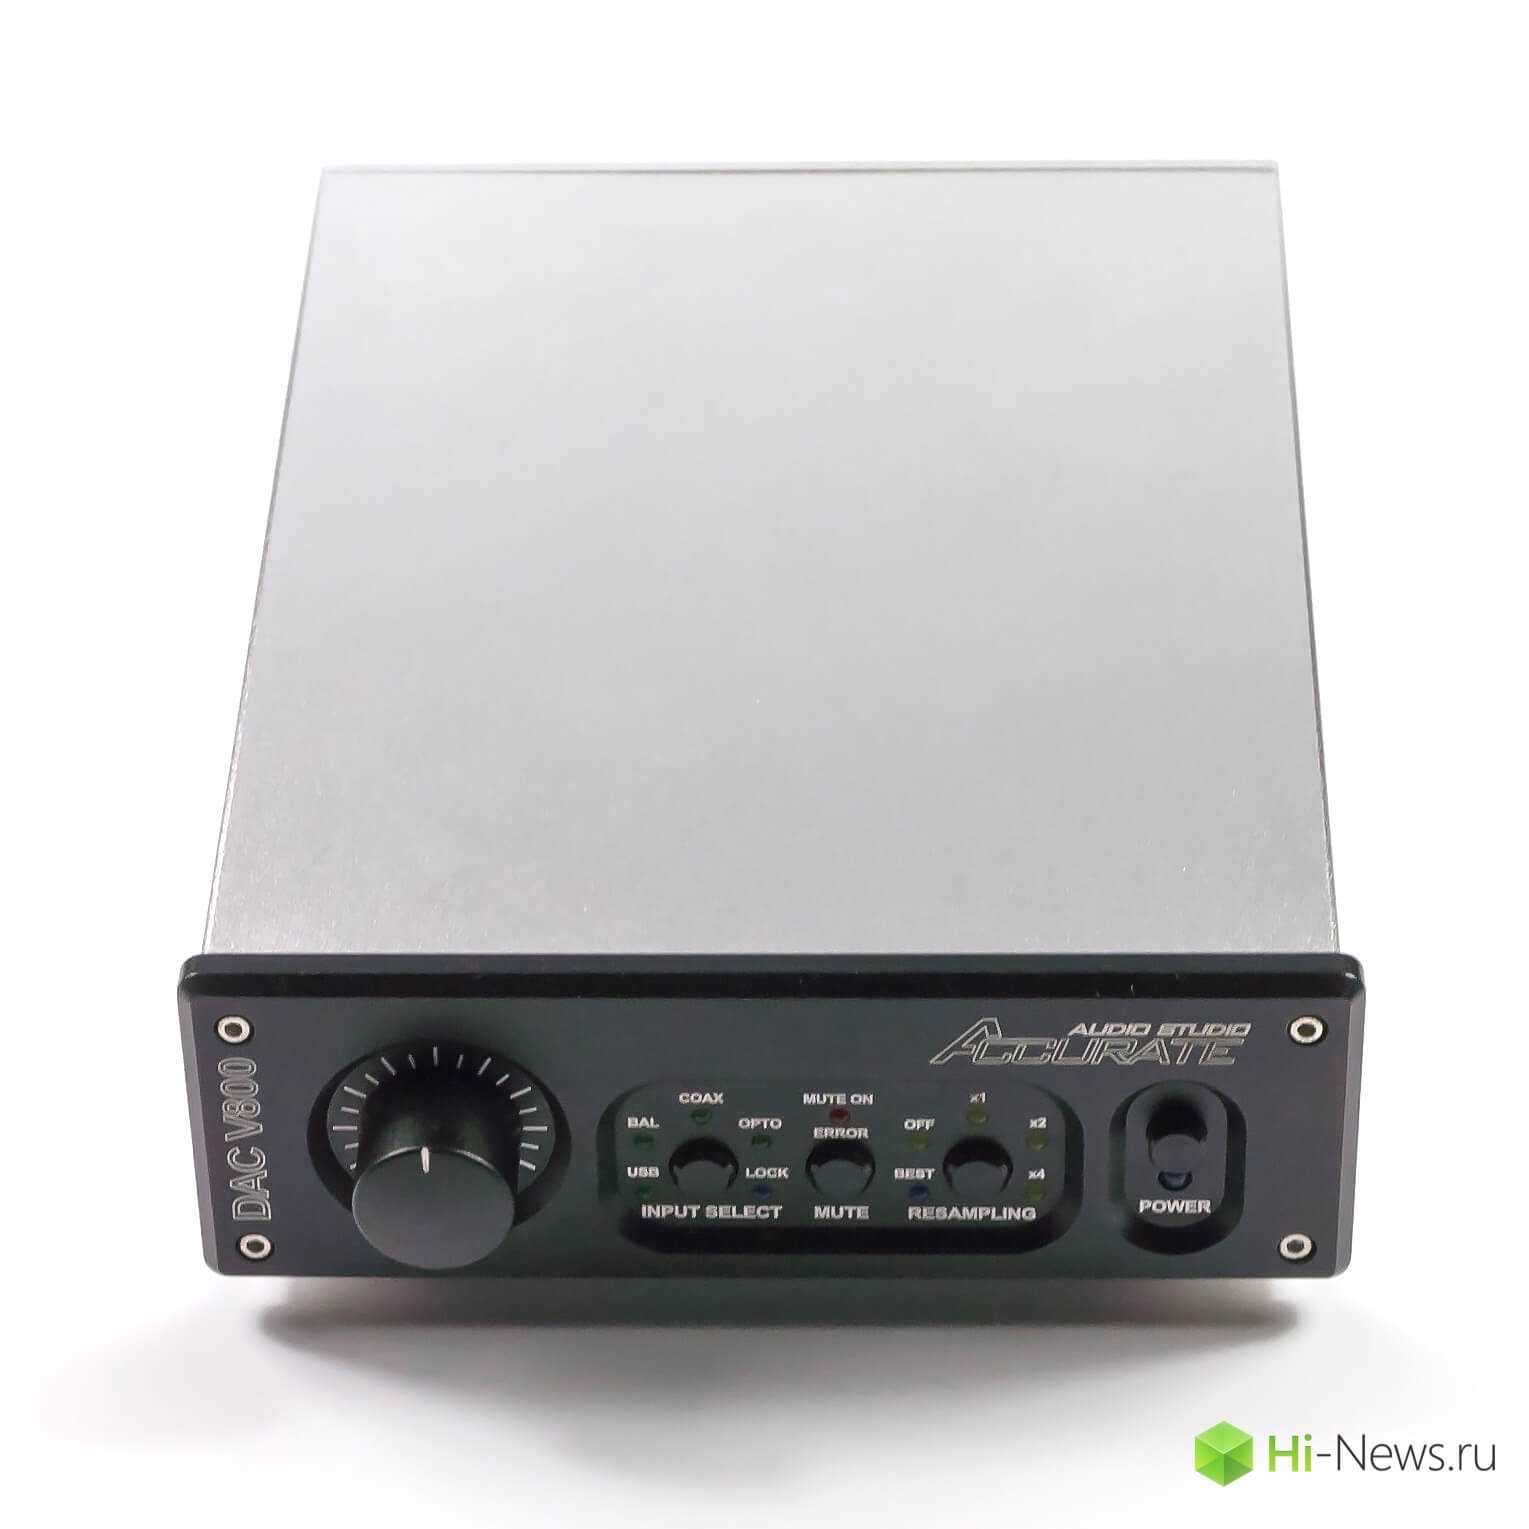 Новый сетевой проигрыватель dms-700 от cary audio